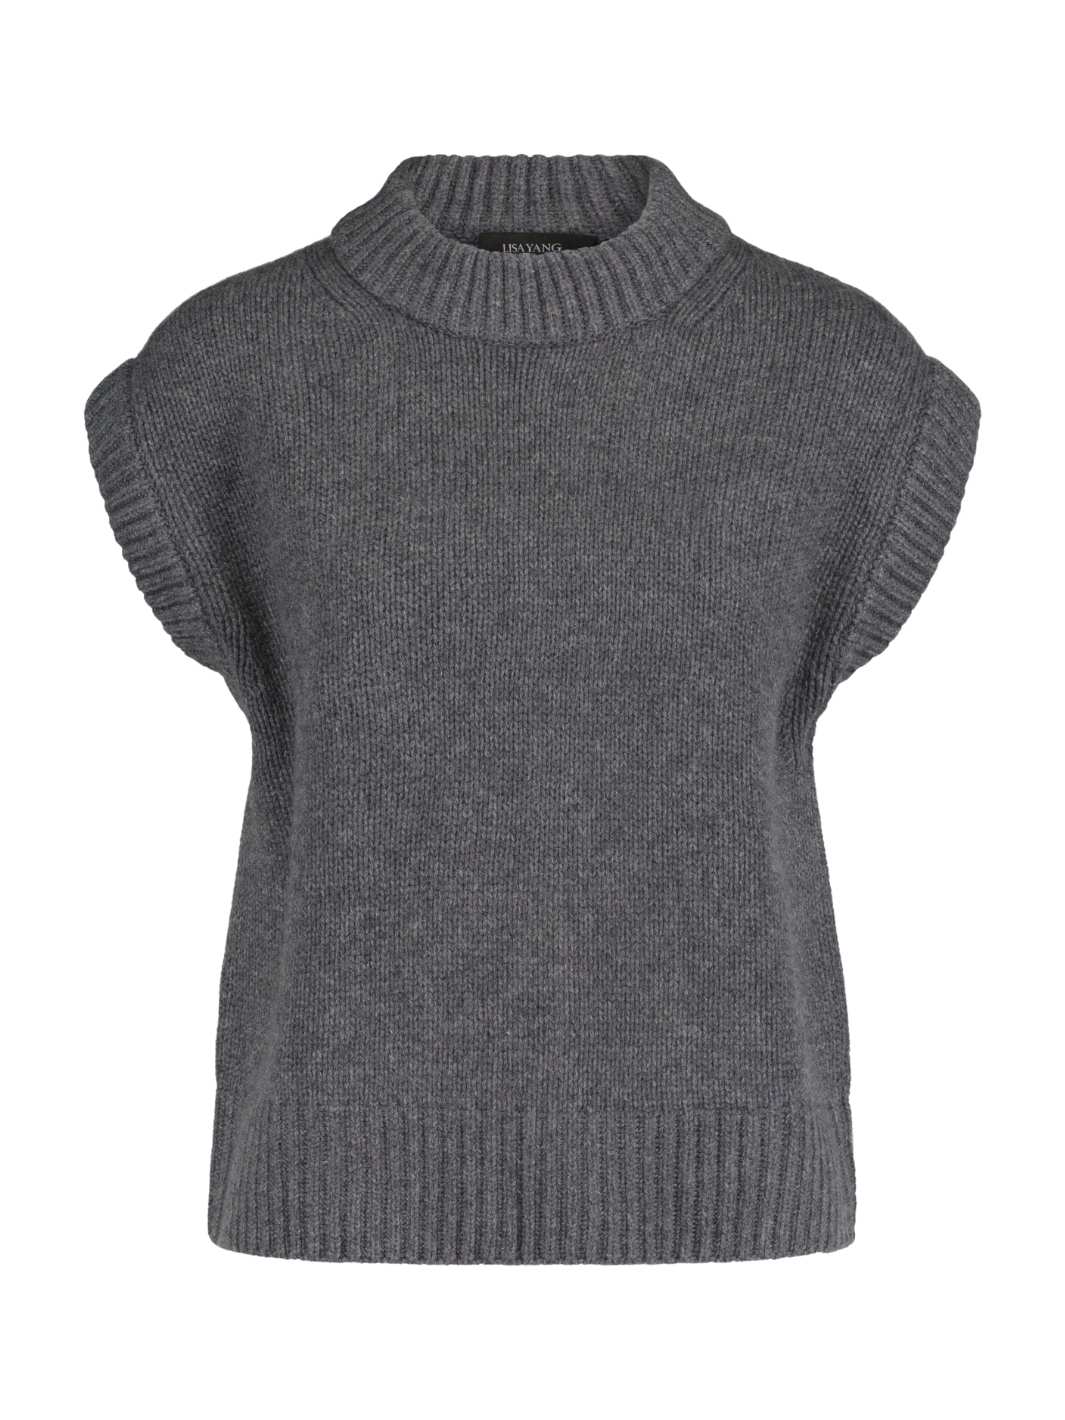 Lisa Yang Knit Genser | Jonny Sweater Graphite